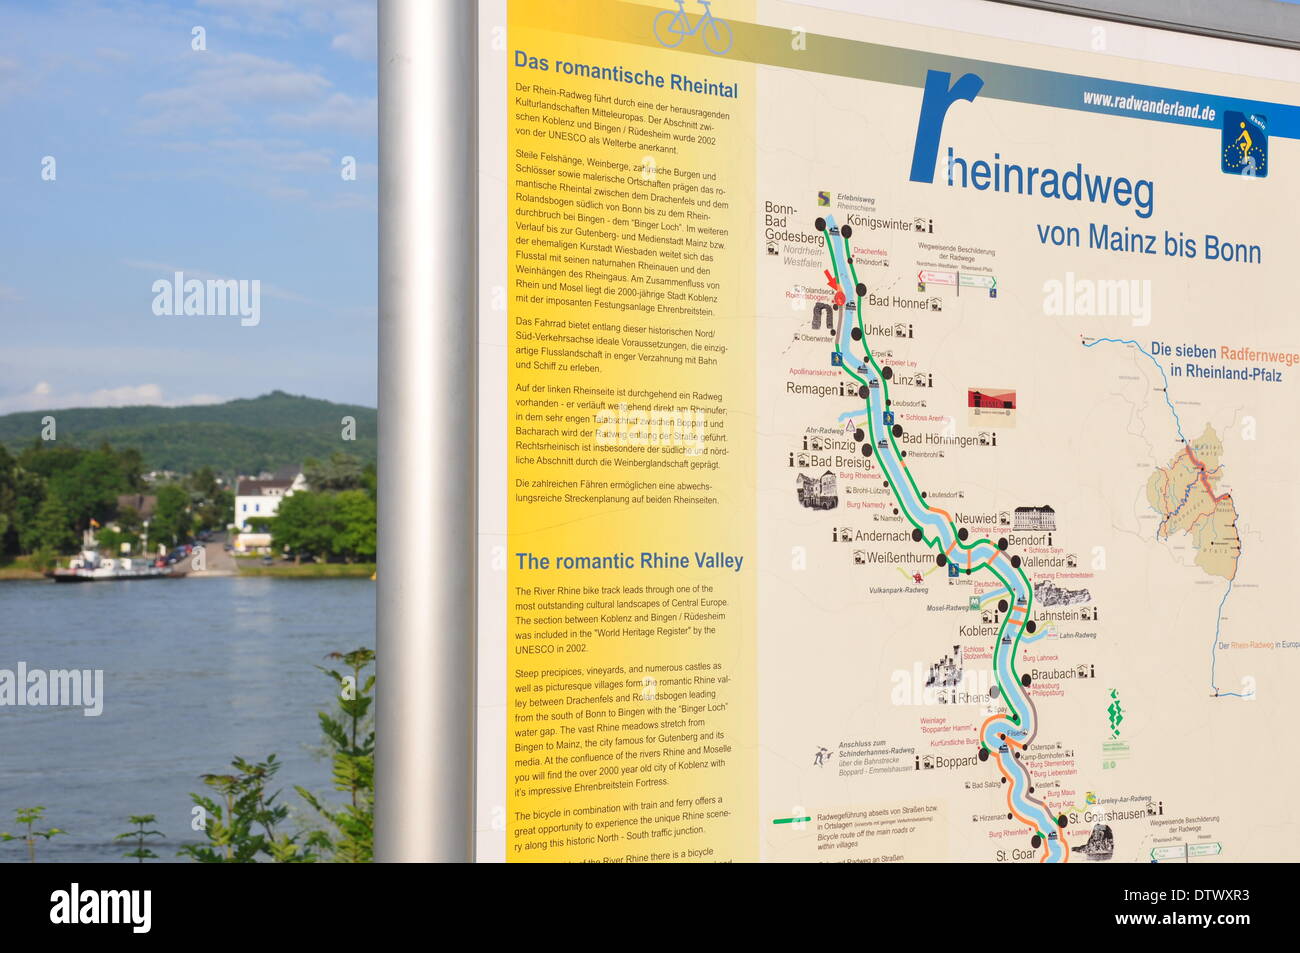 Rheinradweg von mainz nach bonn hi-res stock photography and images - Alamy